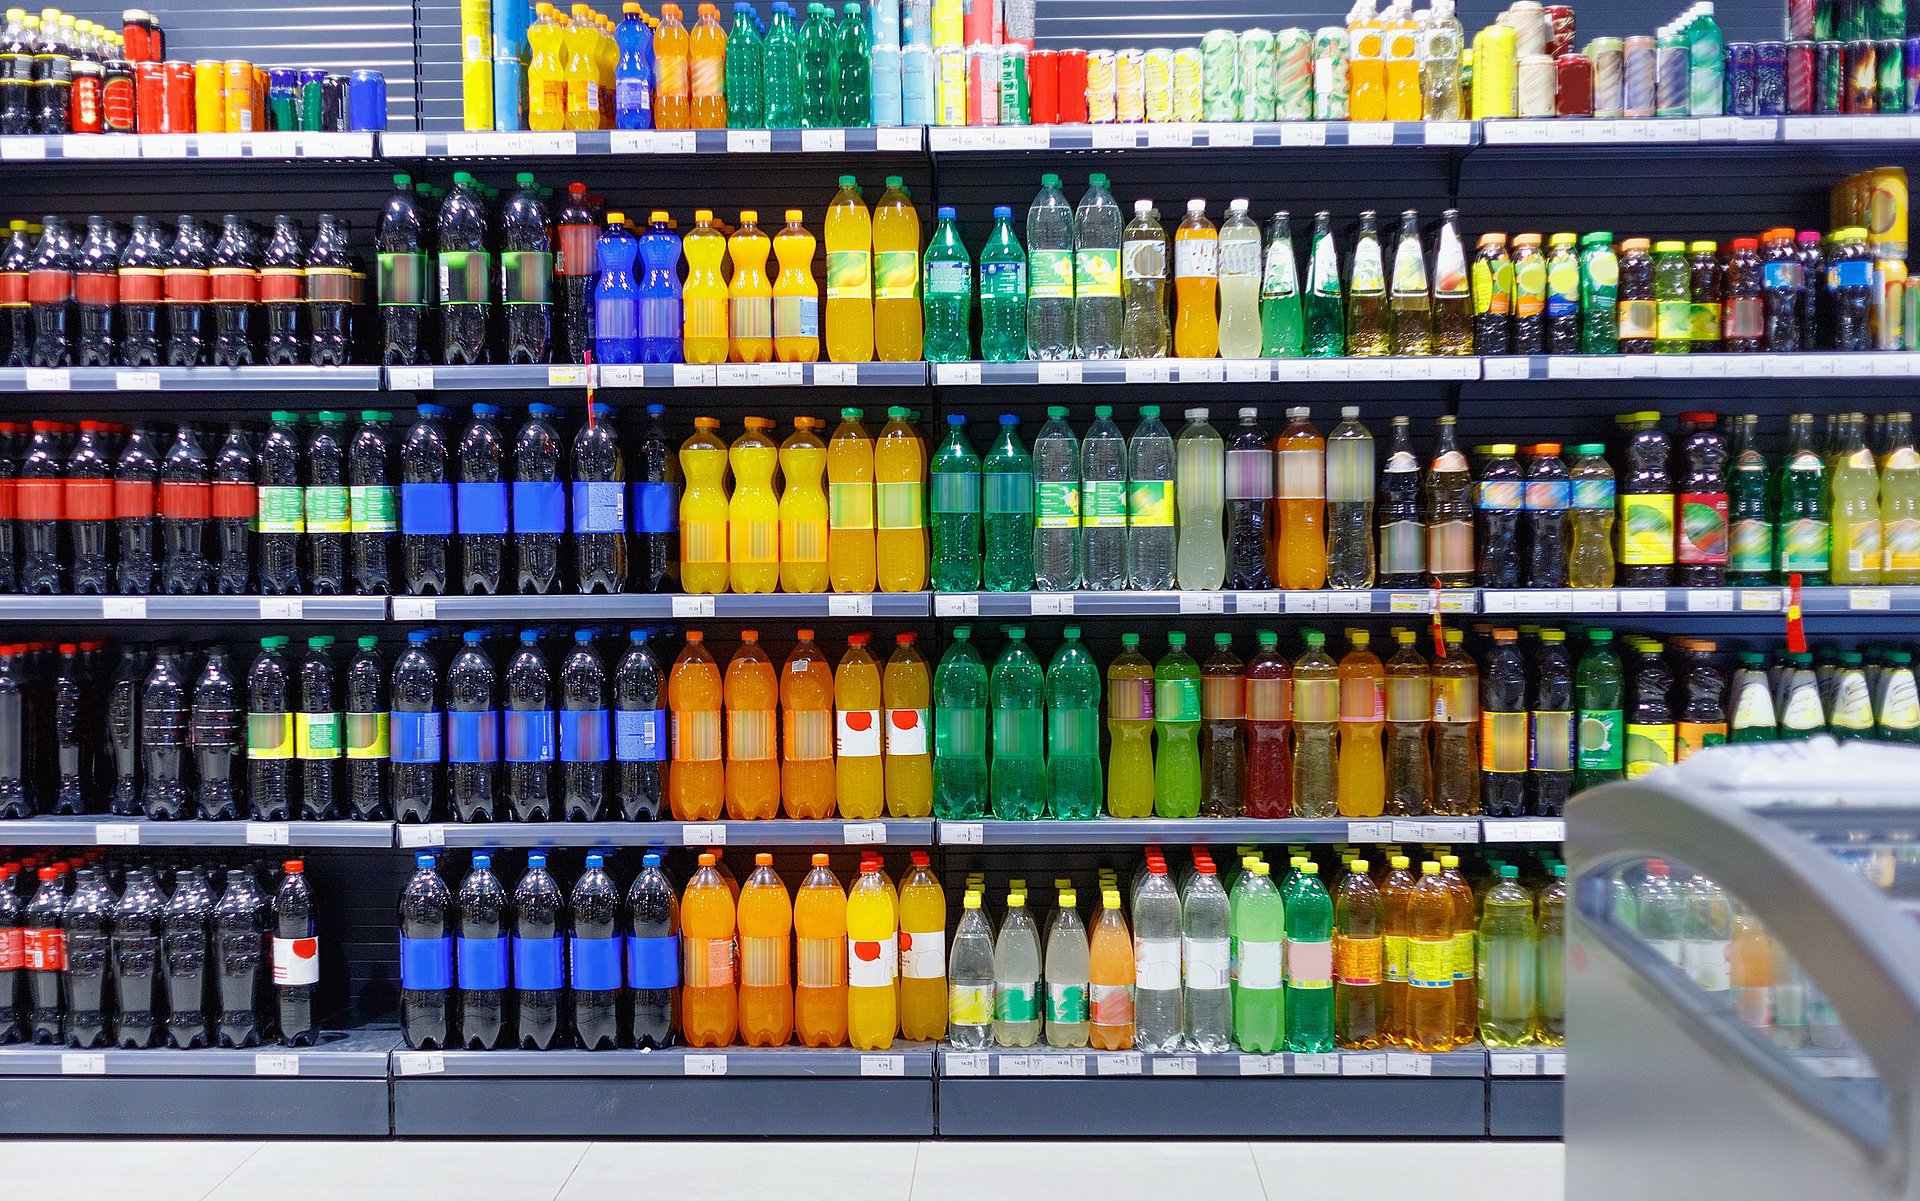 A soda aisle in a super market